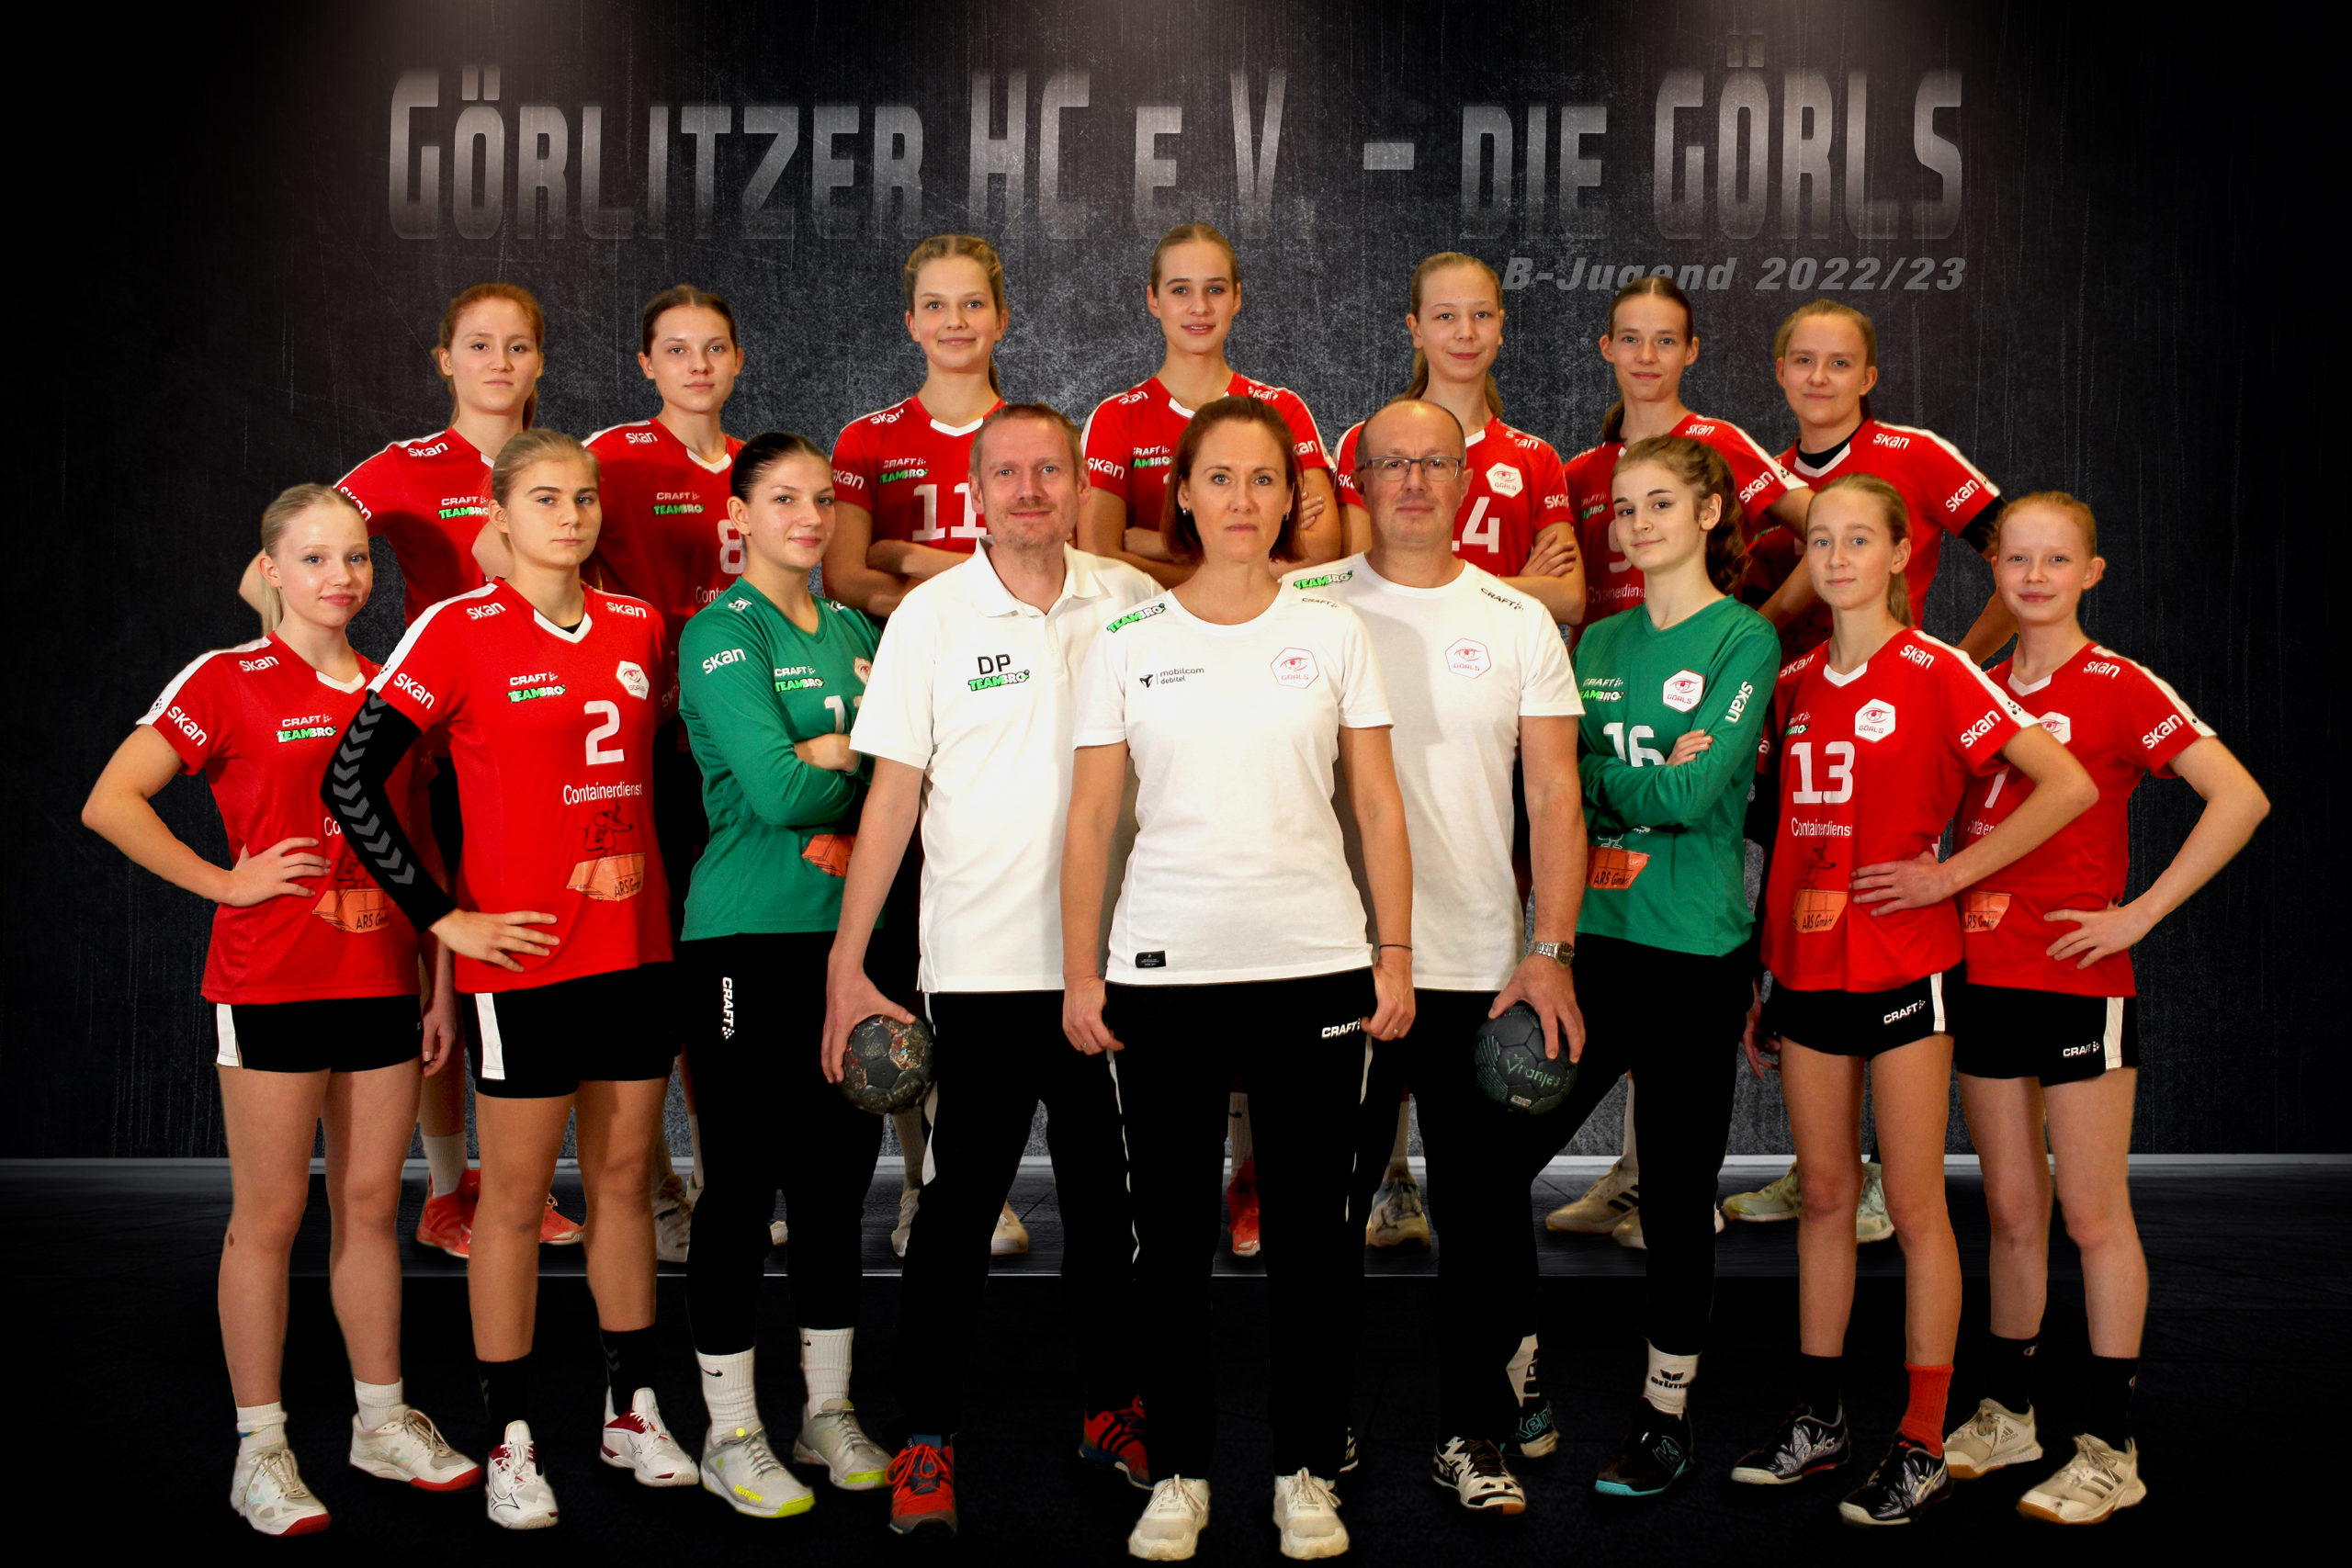 https://handball-goerls.de/wp-content/uploads/2022/10/B-Jugend-2022-scaled.jpg